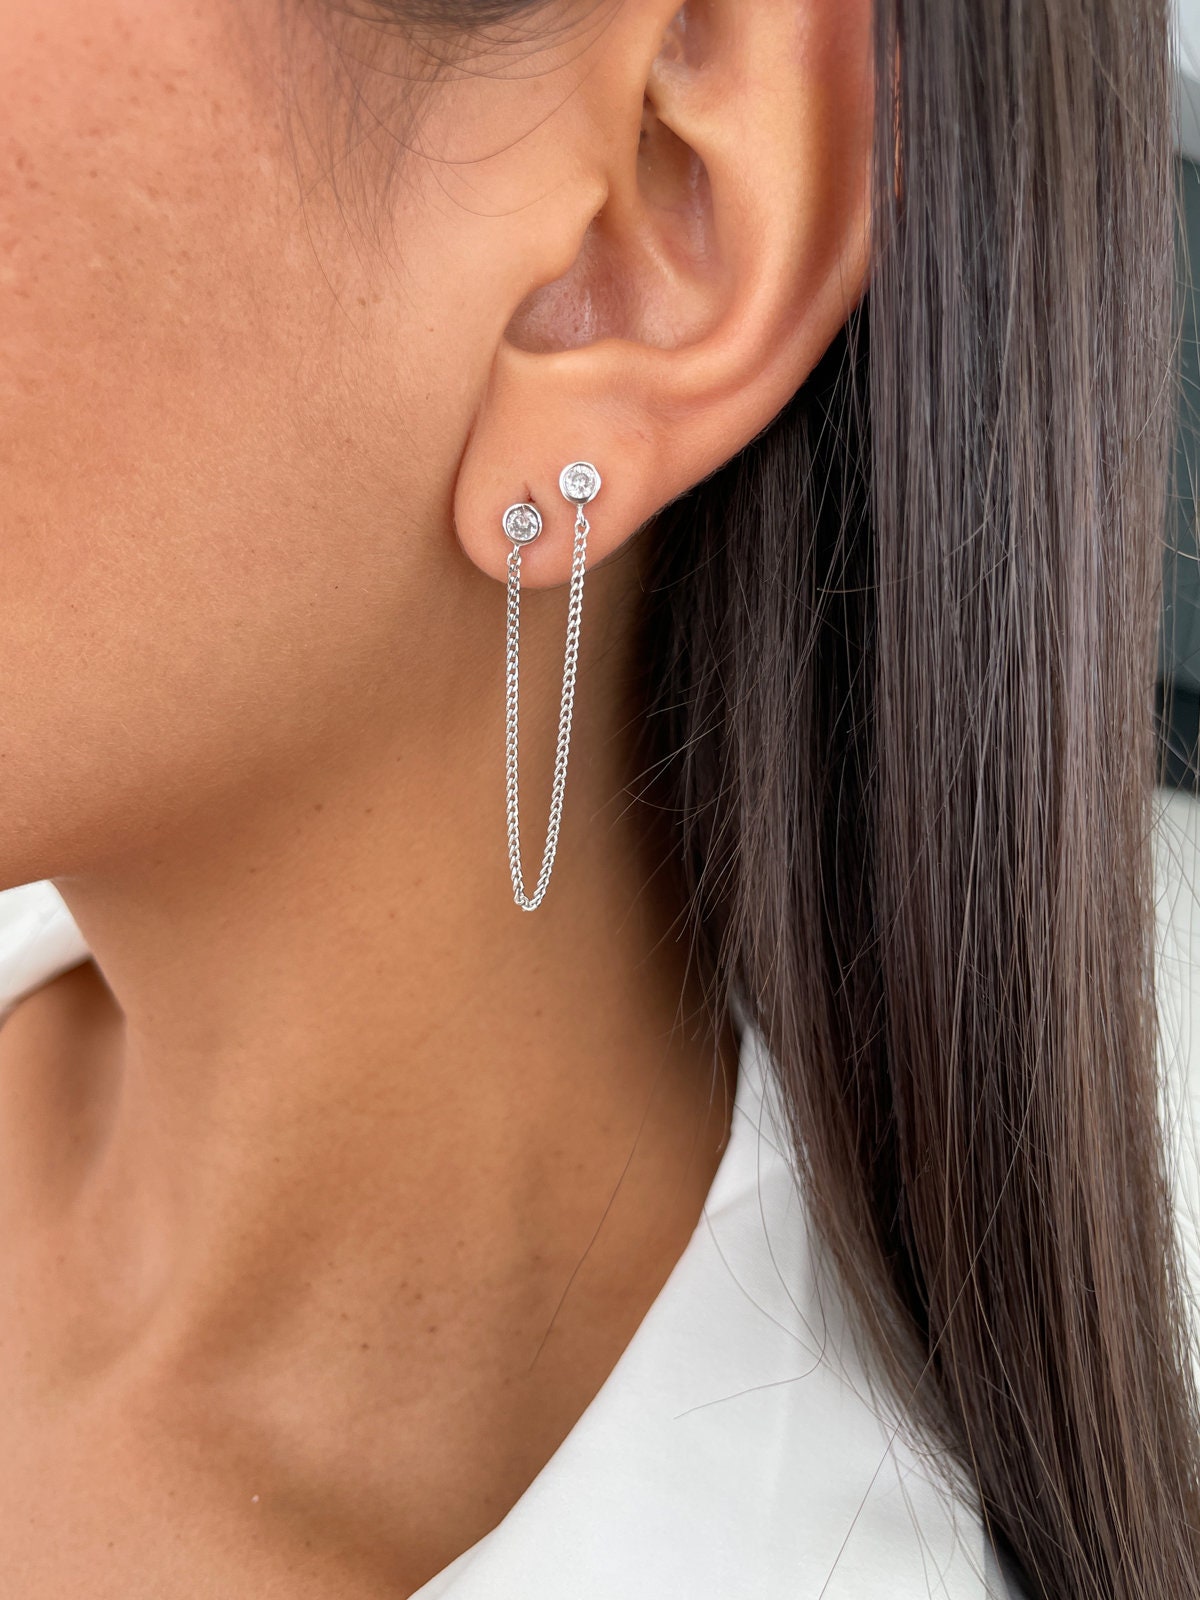 Acheter Bijoux fantaisie Double chaîne gland boucles d'oreilles pour femmes  nouveauté simplicité boucles d'oreilles couleur argent Design à la mode